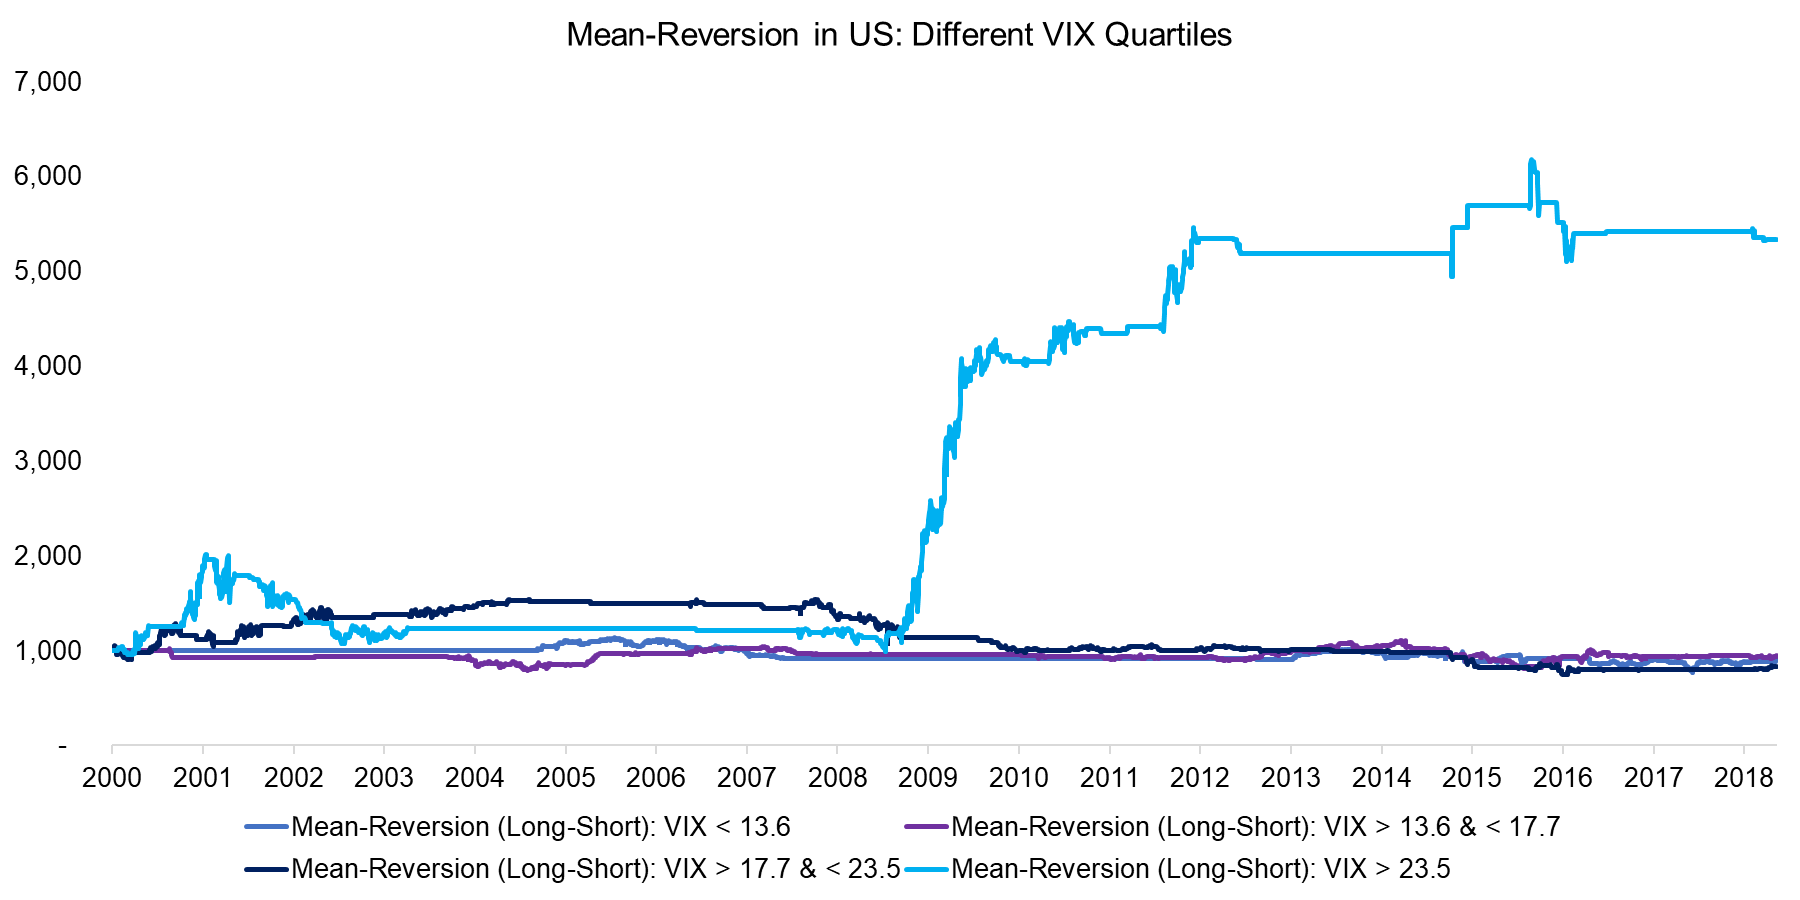 Mean-Reversion in US Different VIX Quartiles